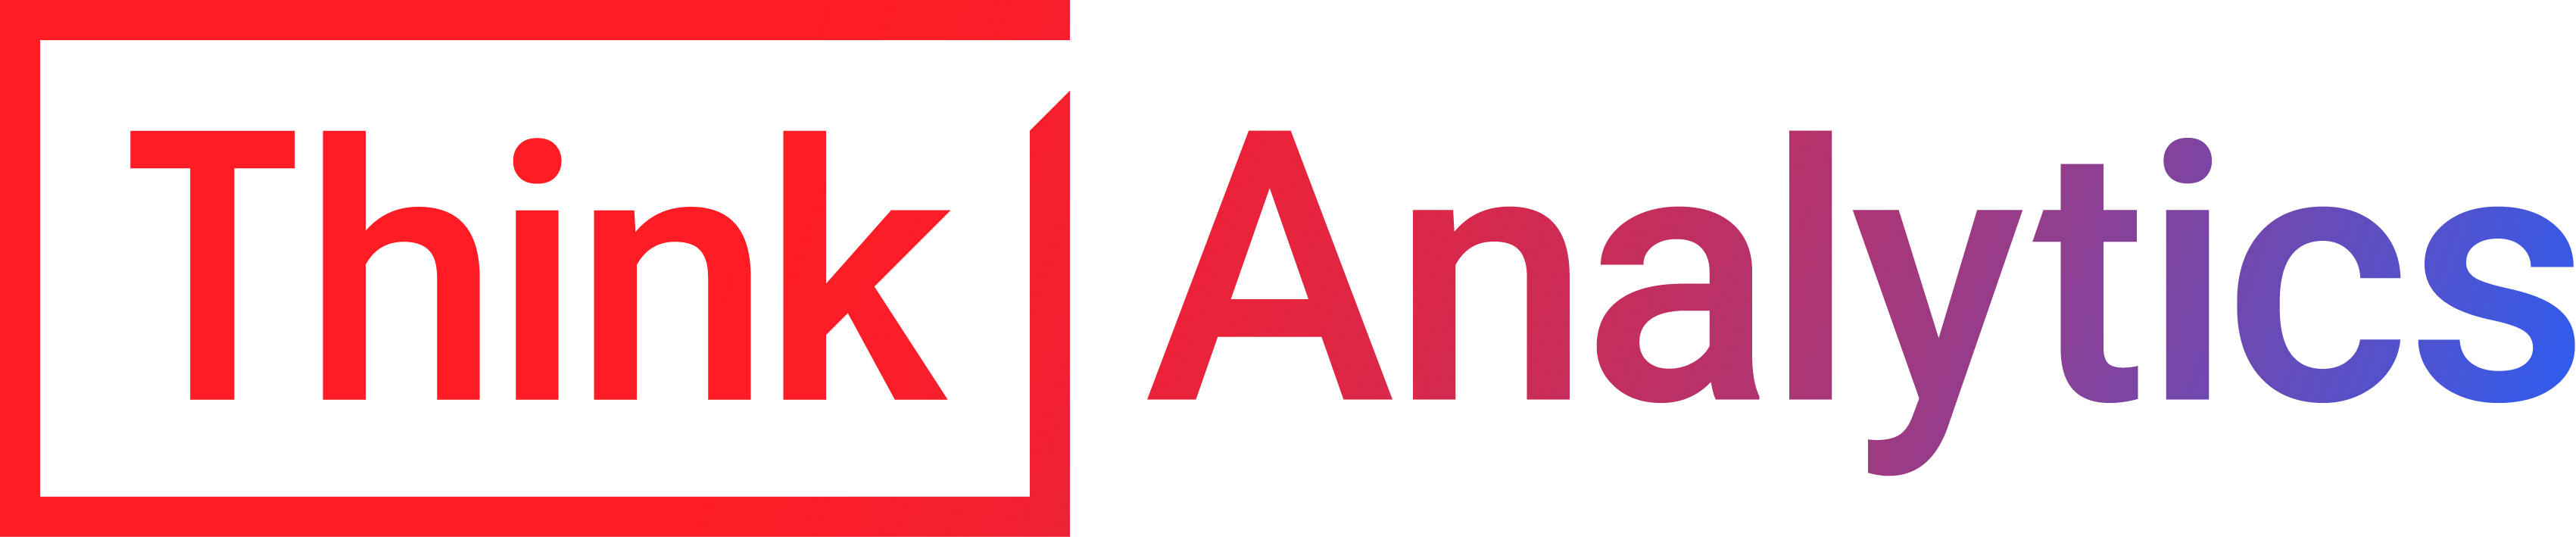 ThinkAnalytics logo